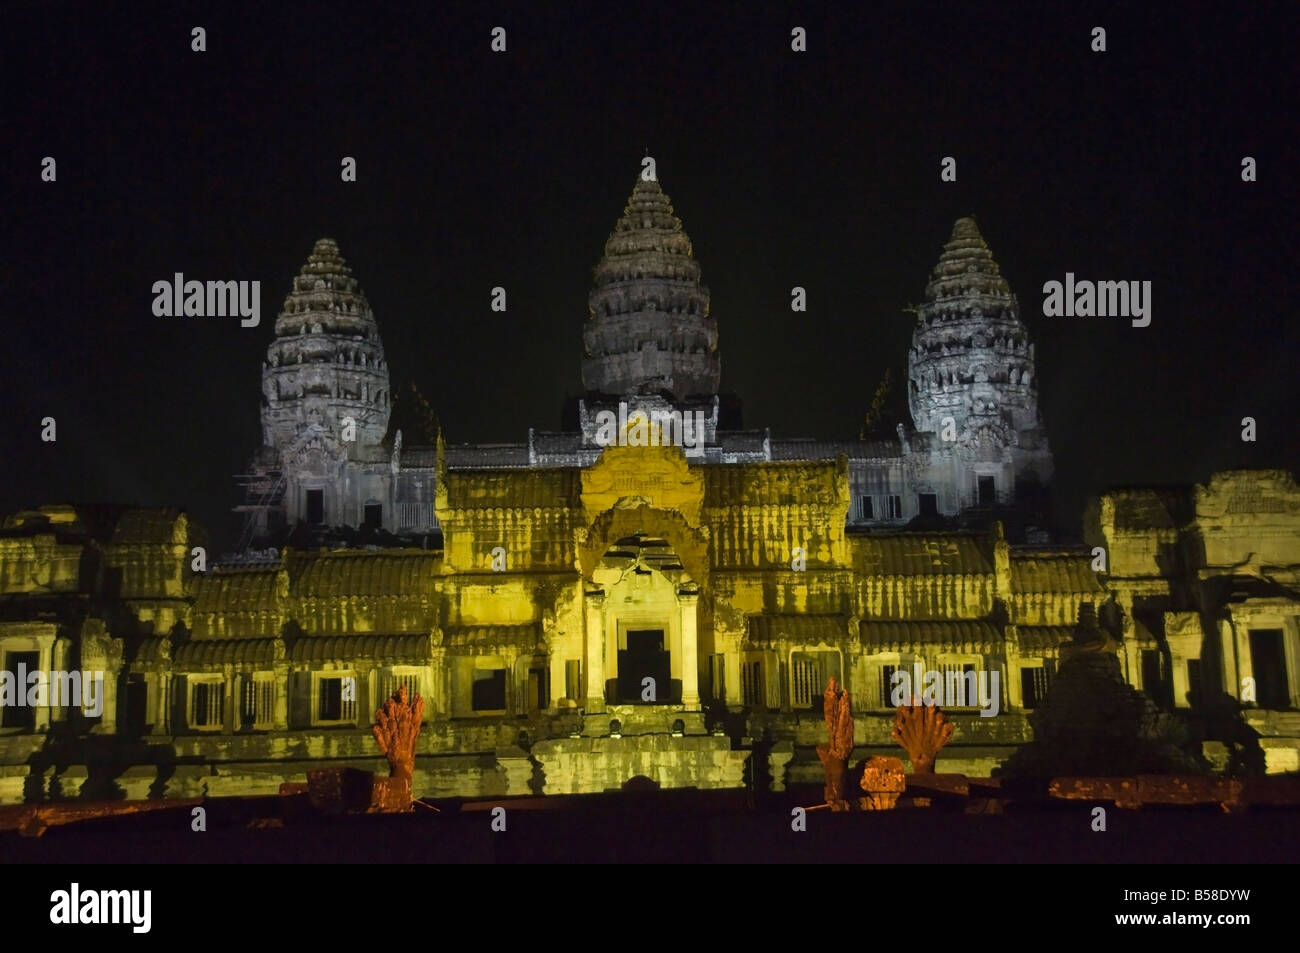 Tempel von Angkor Wat in der Nacht beleuchtet für eine spezielle Licht-Show, Angkor, Südost-Asien, Indochina, Siem Reap, Kambodscha Stockfoto